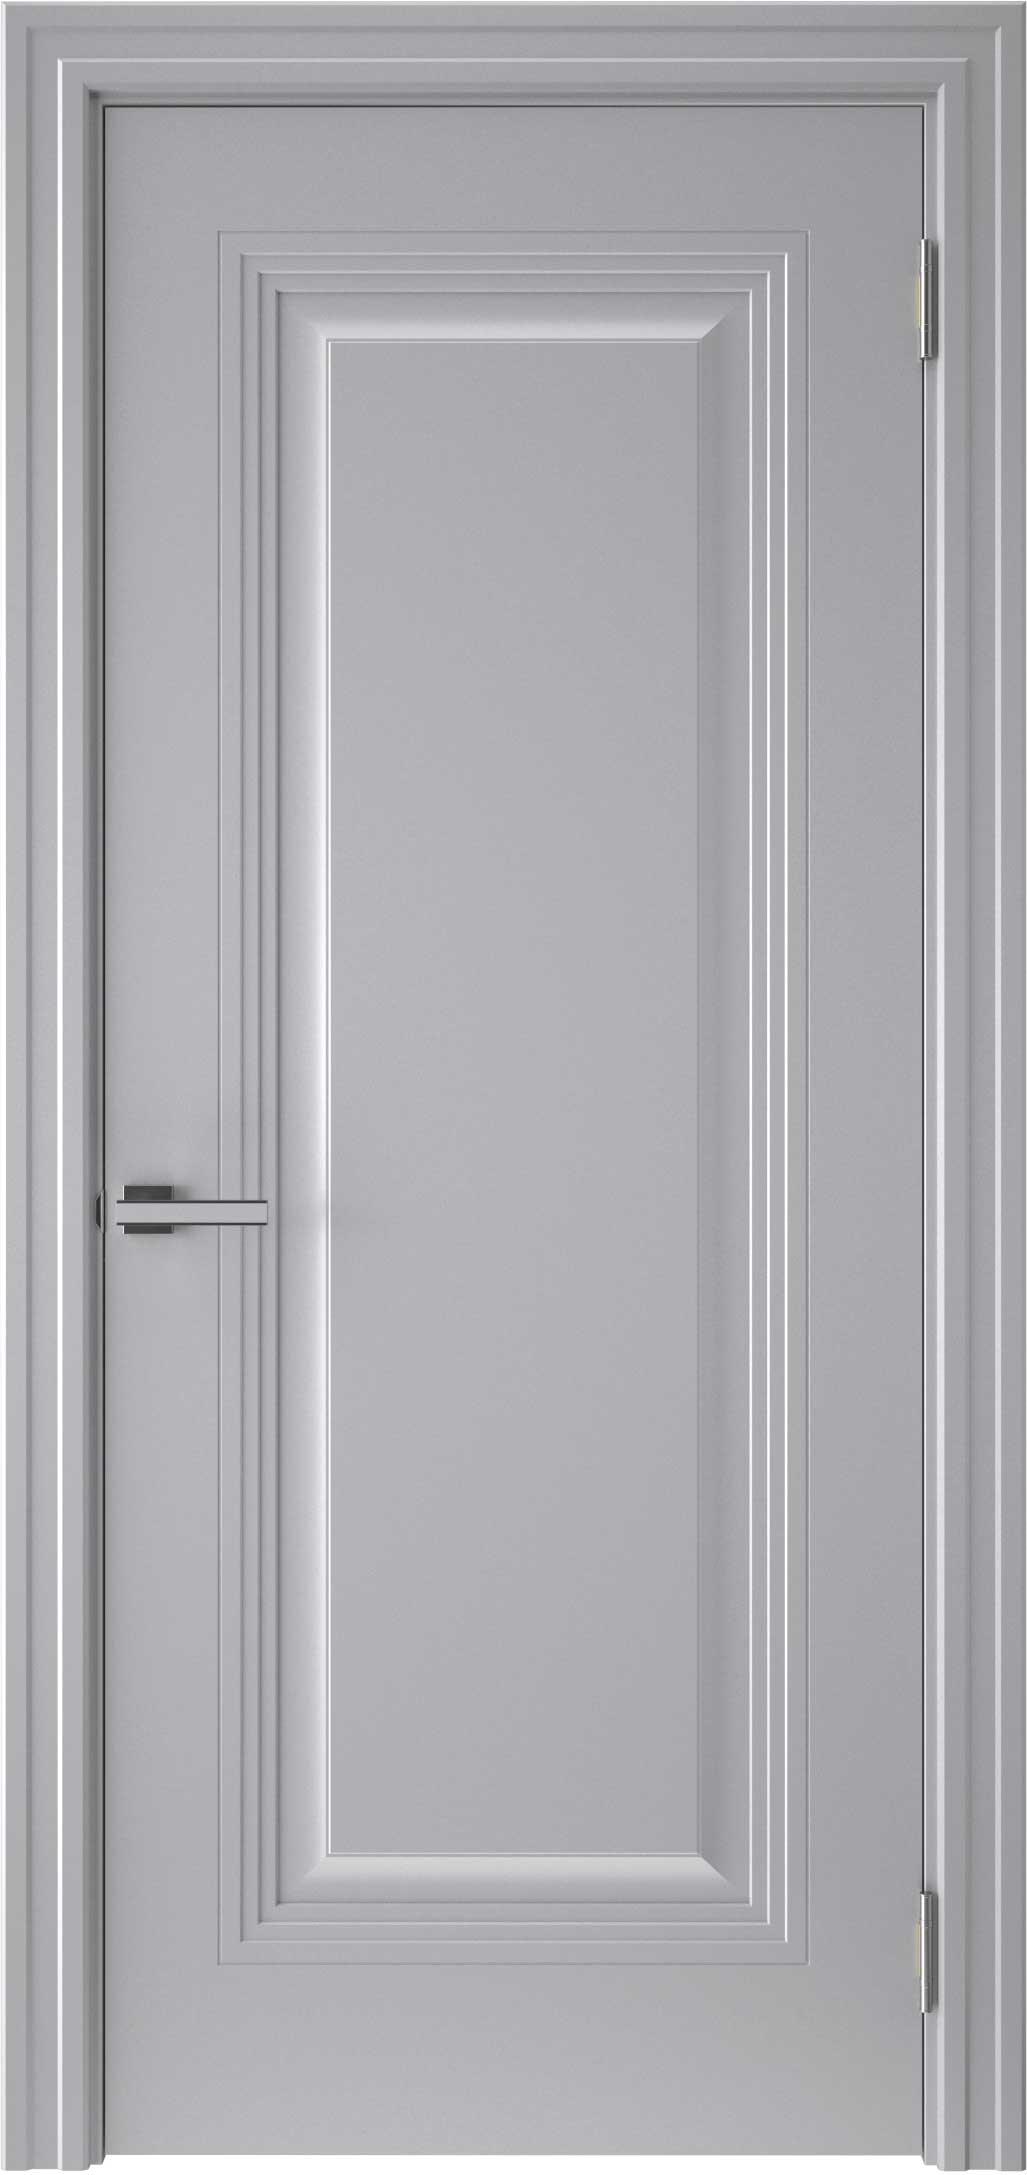 Двери крашеные (Эмаль) ТЕКОНА Смальта-48 глухое Серый ral 7036 размер 200 х 90 см. артикул F0000096598